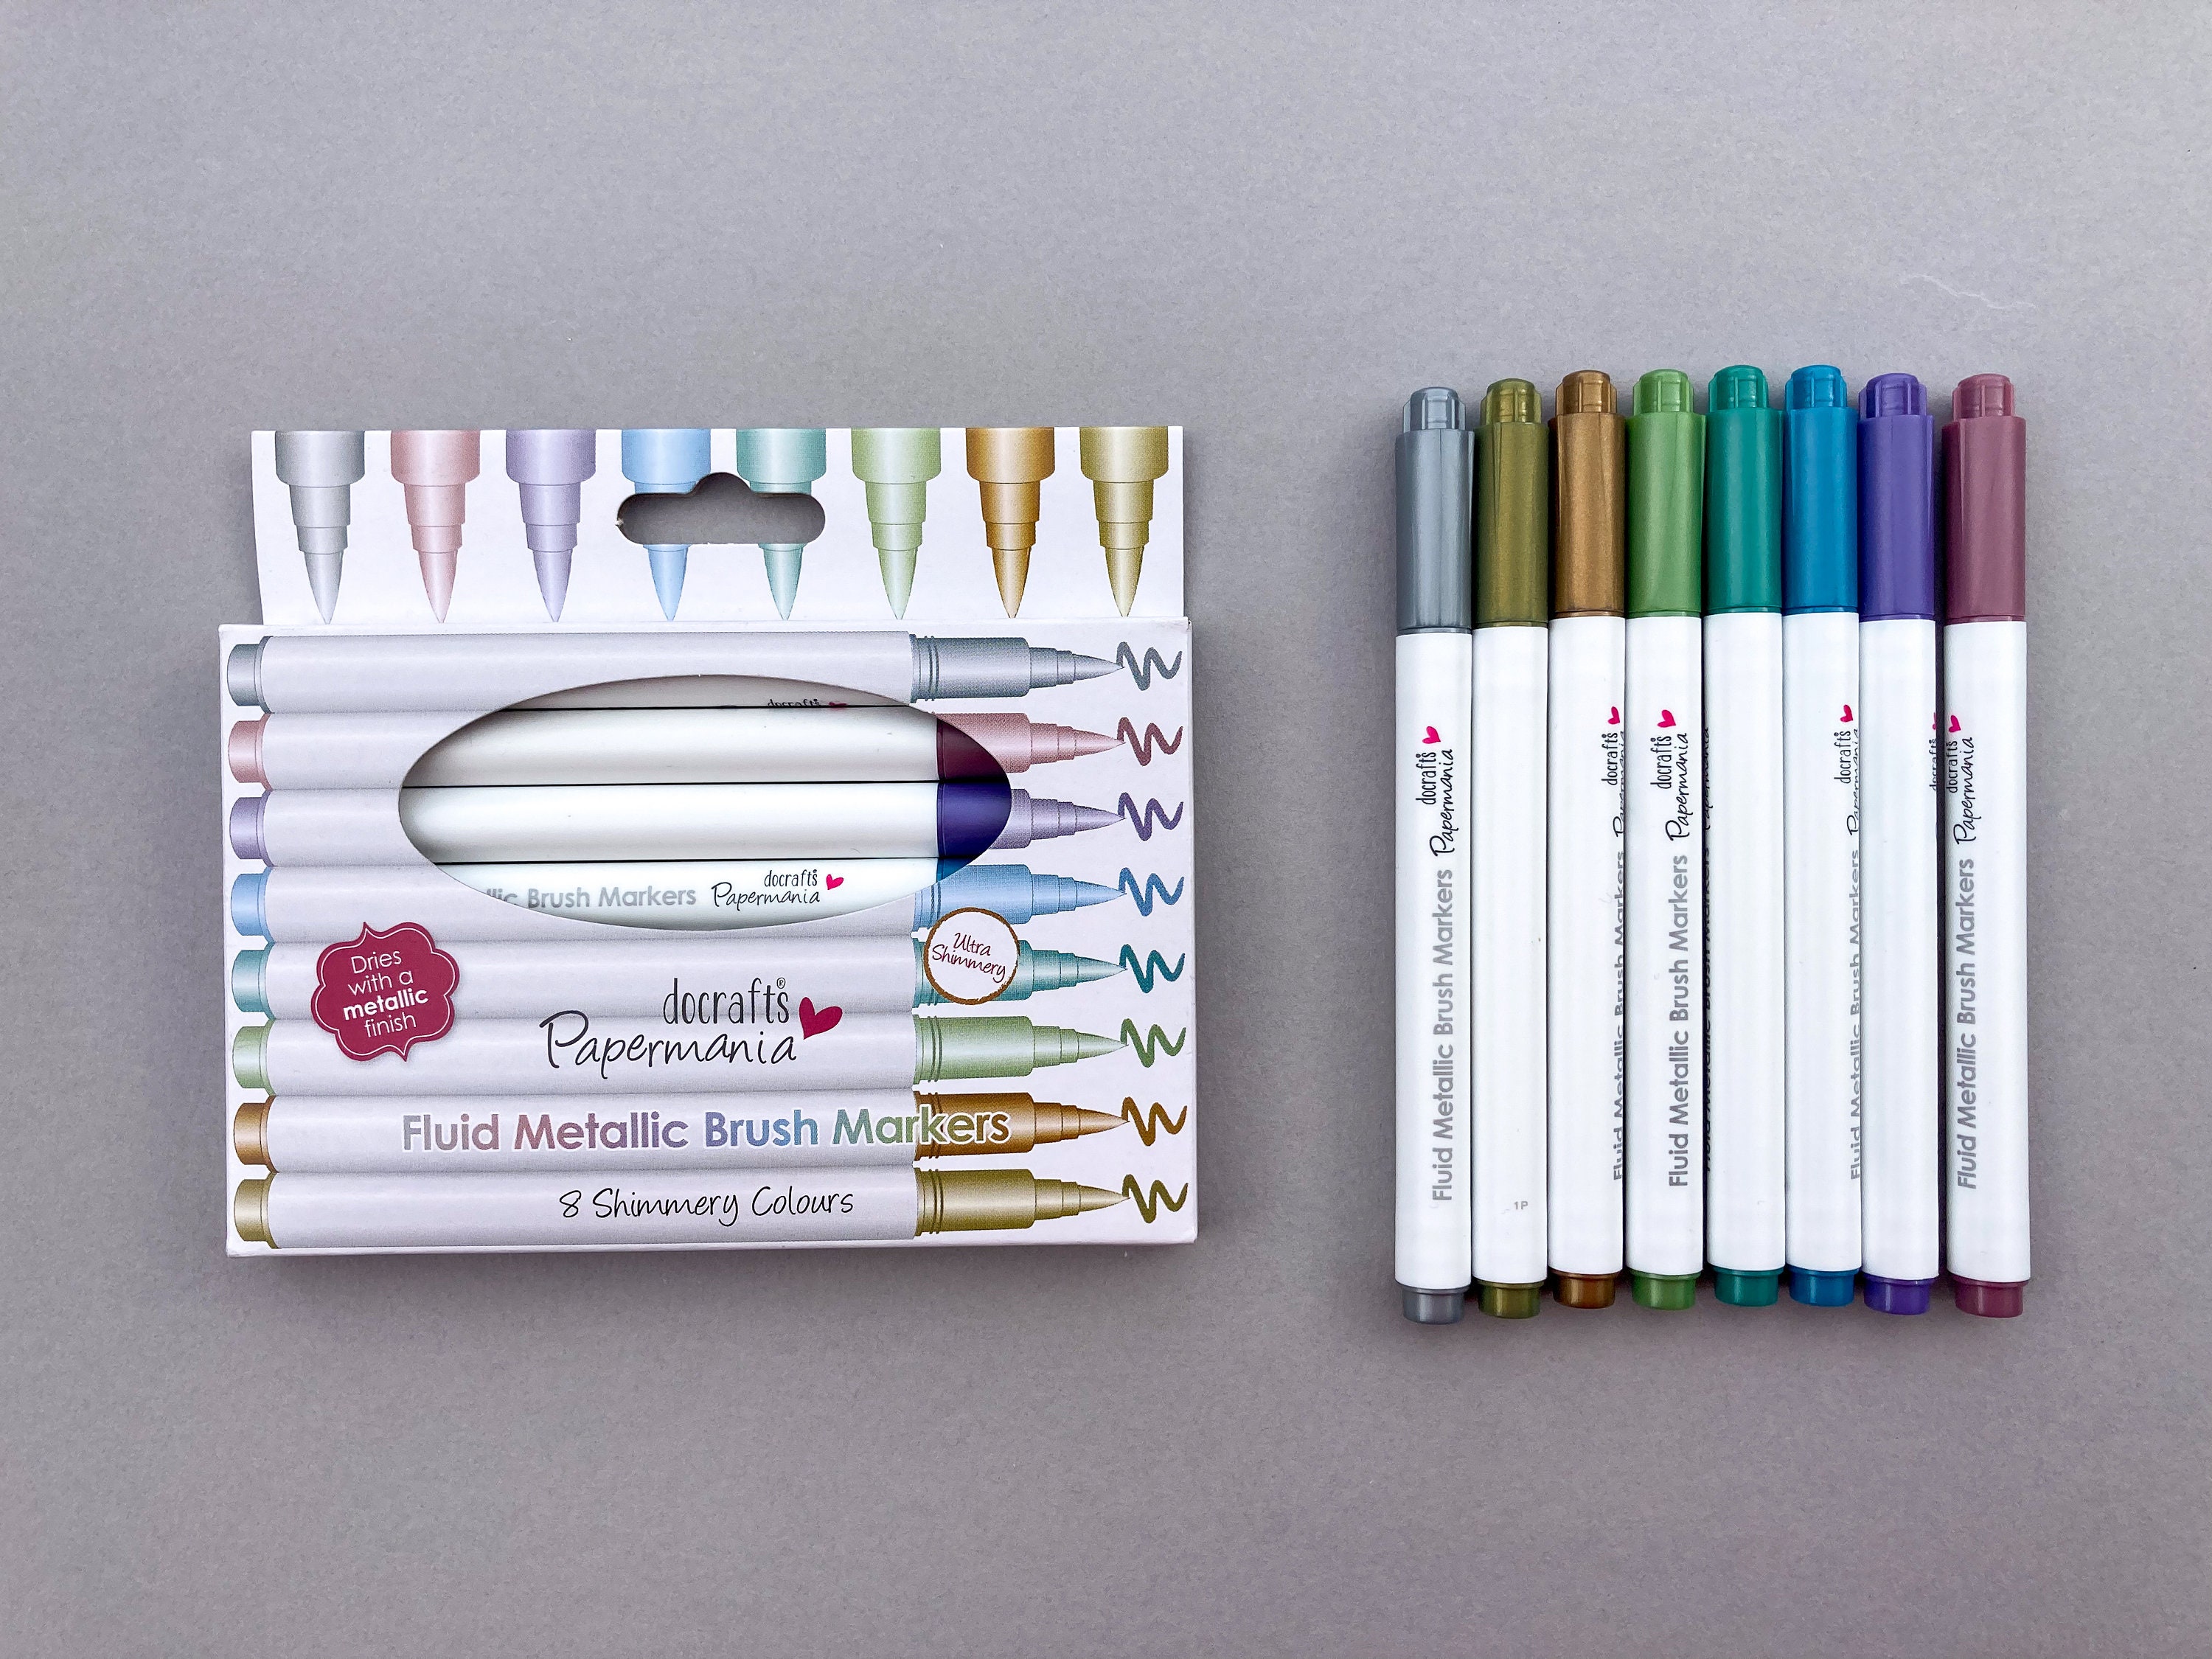 Artline Stix Brush Markers, Pack of 10, Brush Pens for Modern